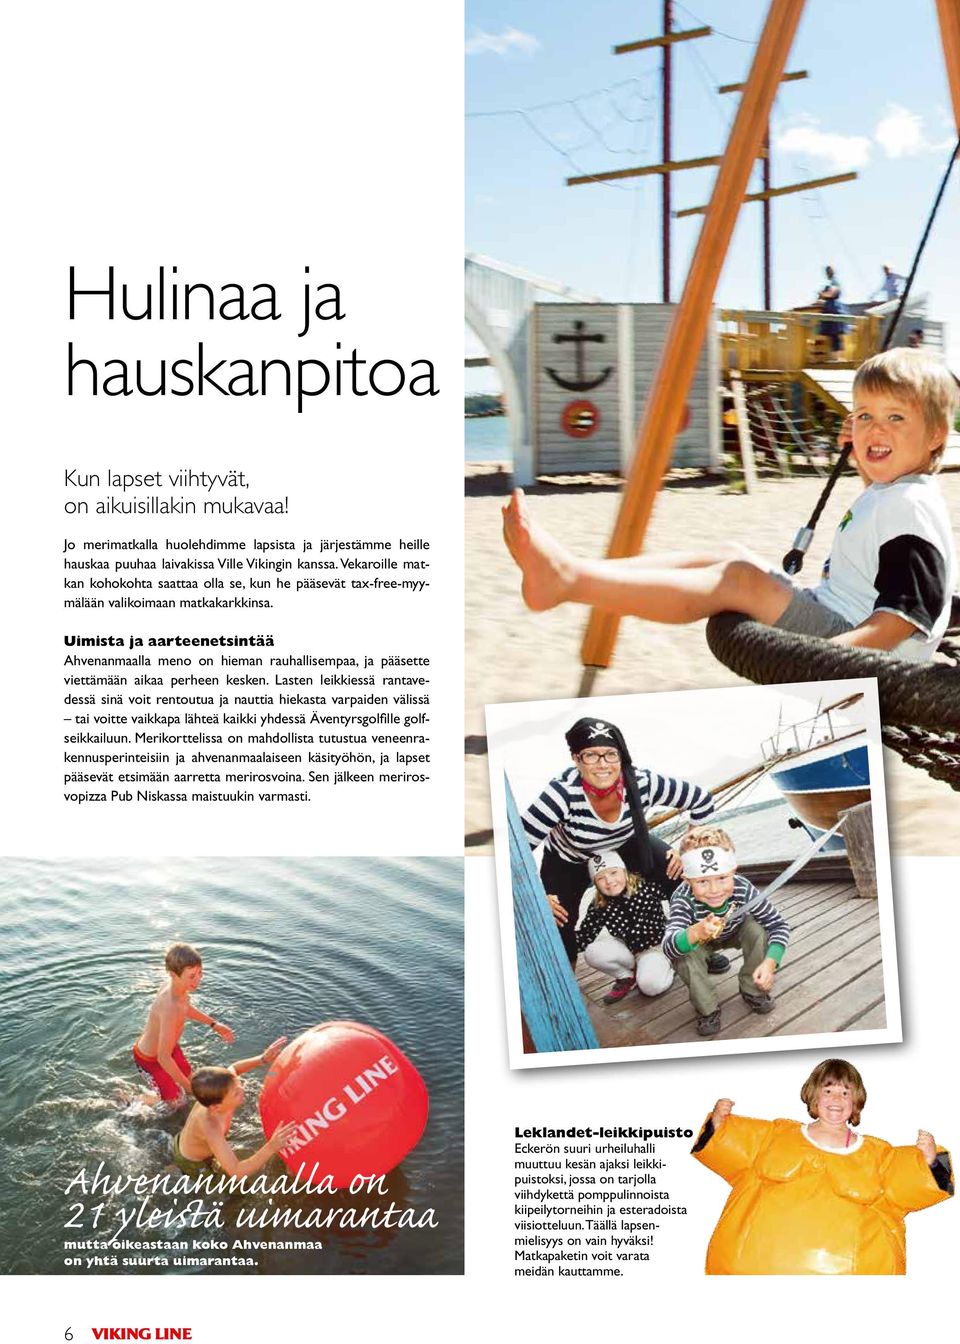 Uimista ja aarteenetsintää Ahvenanmaalla meno on hieman rauhallisempaa, ja pääsette viettämään aikaa perheen kesken.